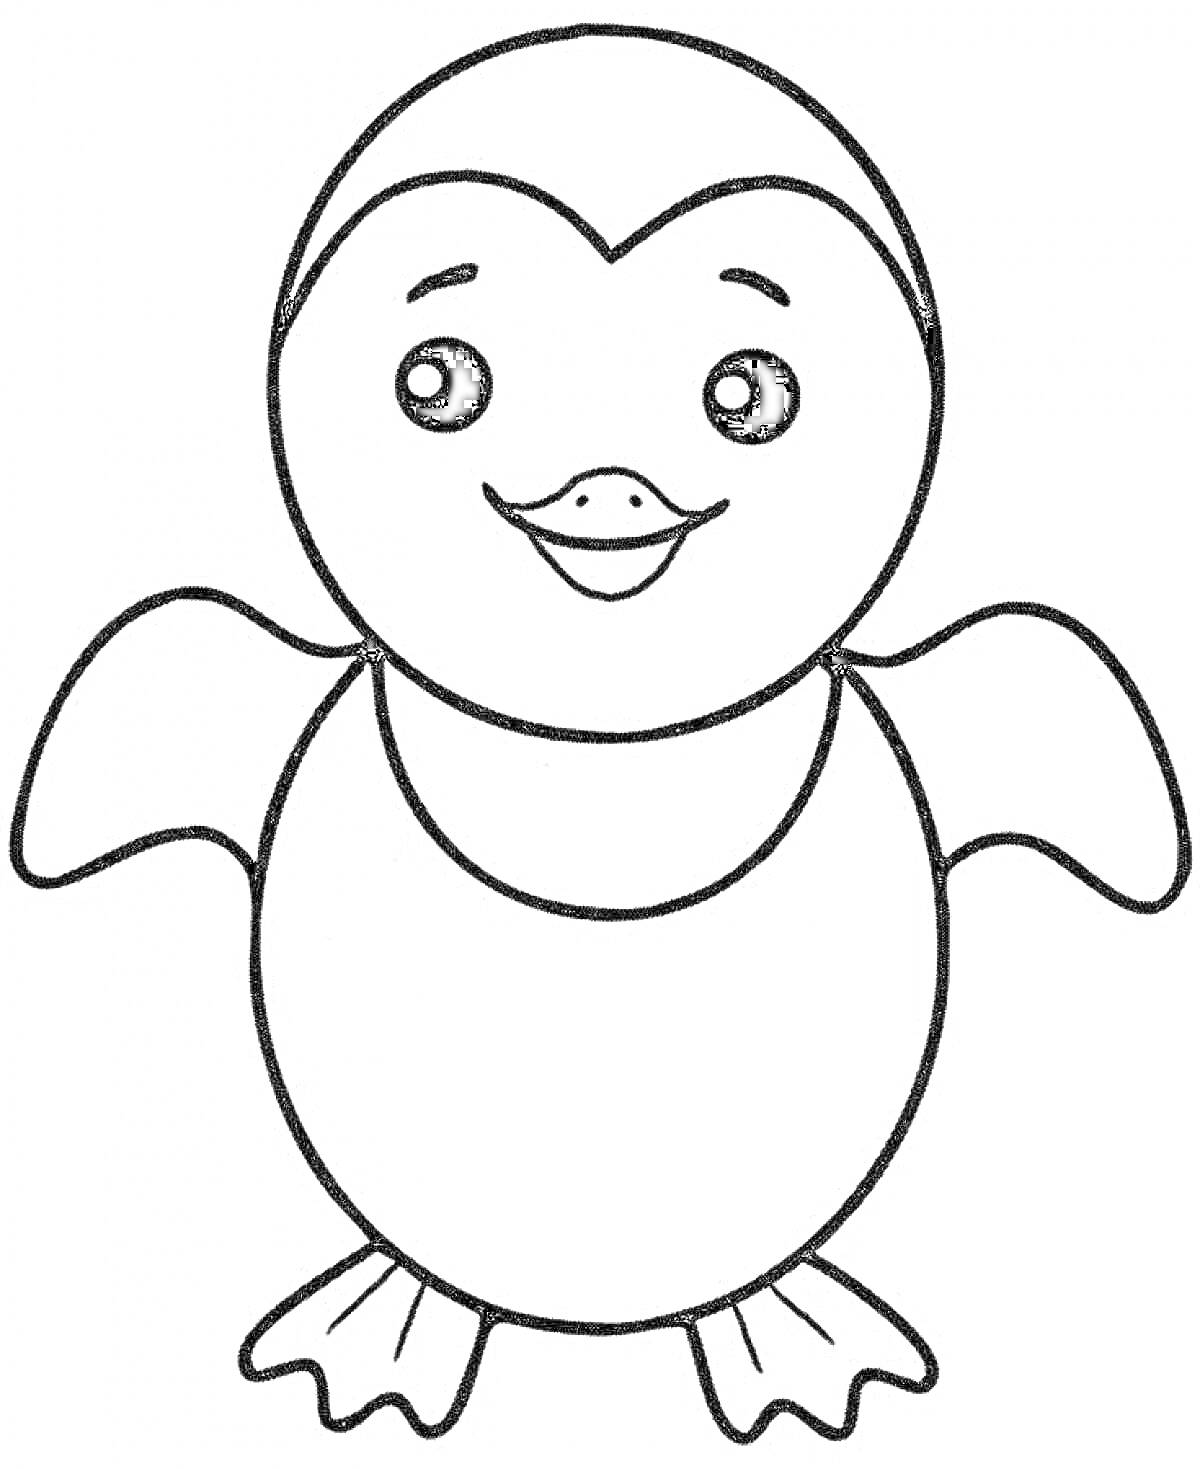 Раскраска Раскраска для малышей с нарисованным пингвином с поднятыми крыльями и улыбающимся лицом